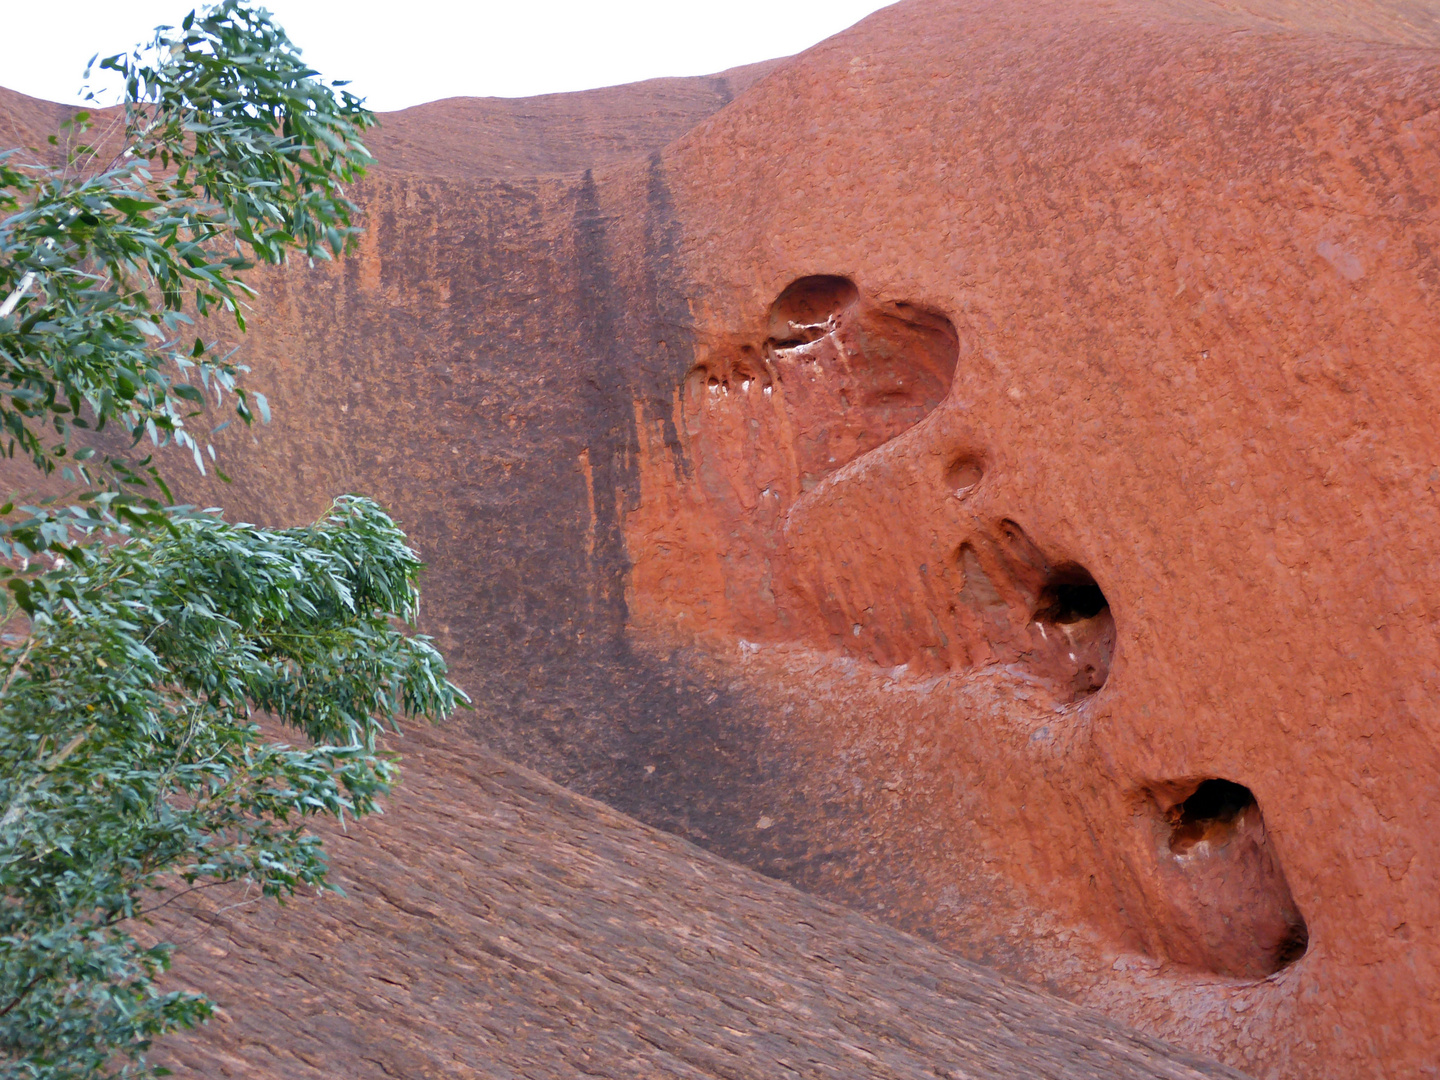 "Herz"liche Grüße vom Uluru (Ayers Rock), Australien